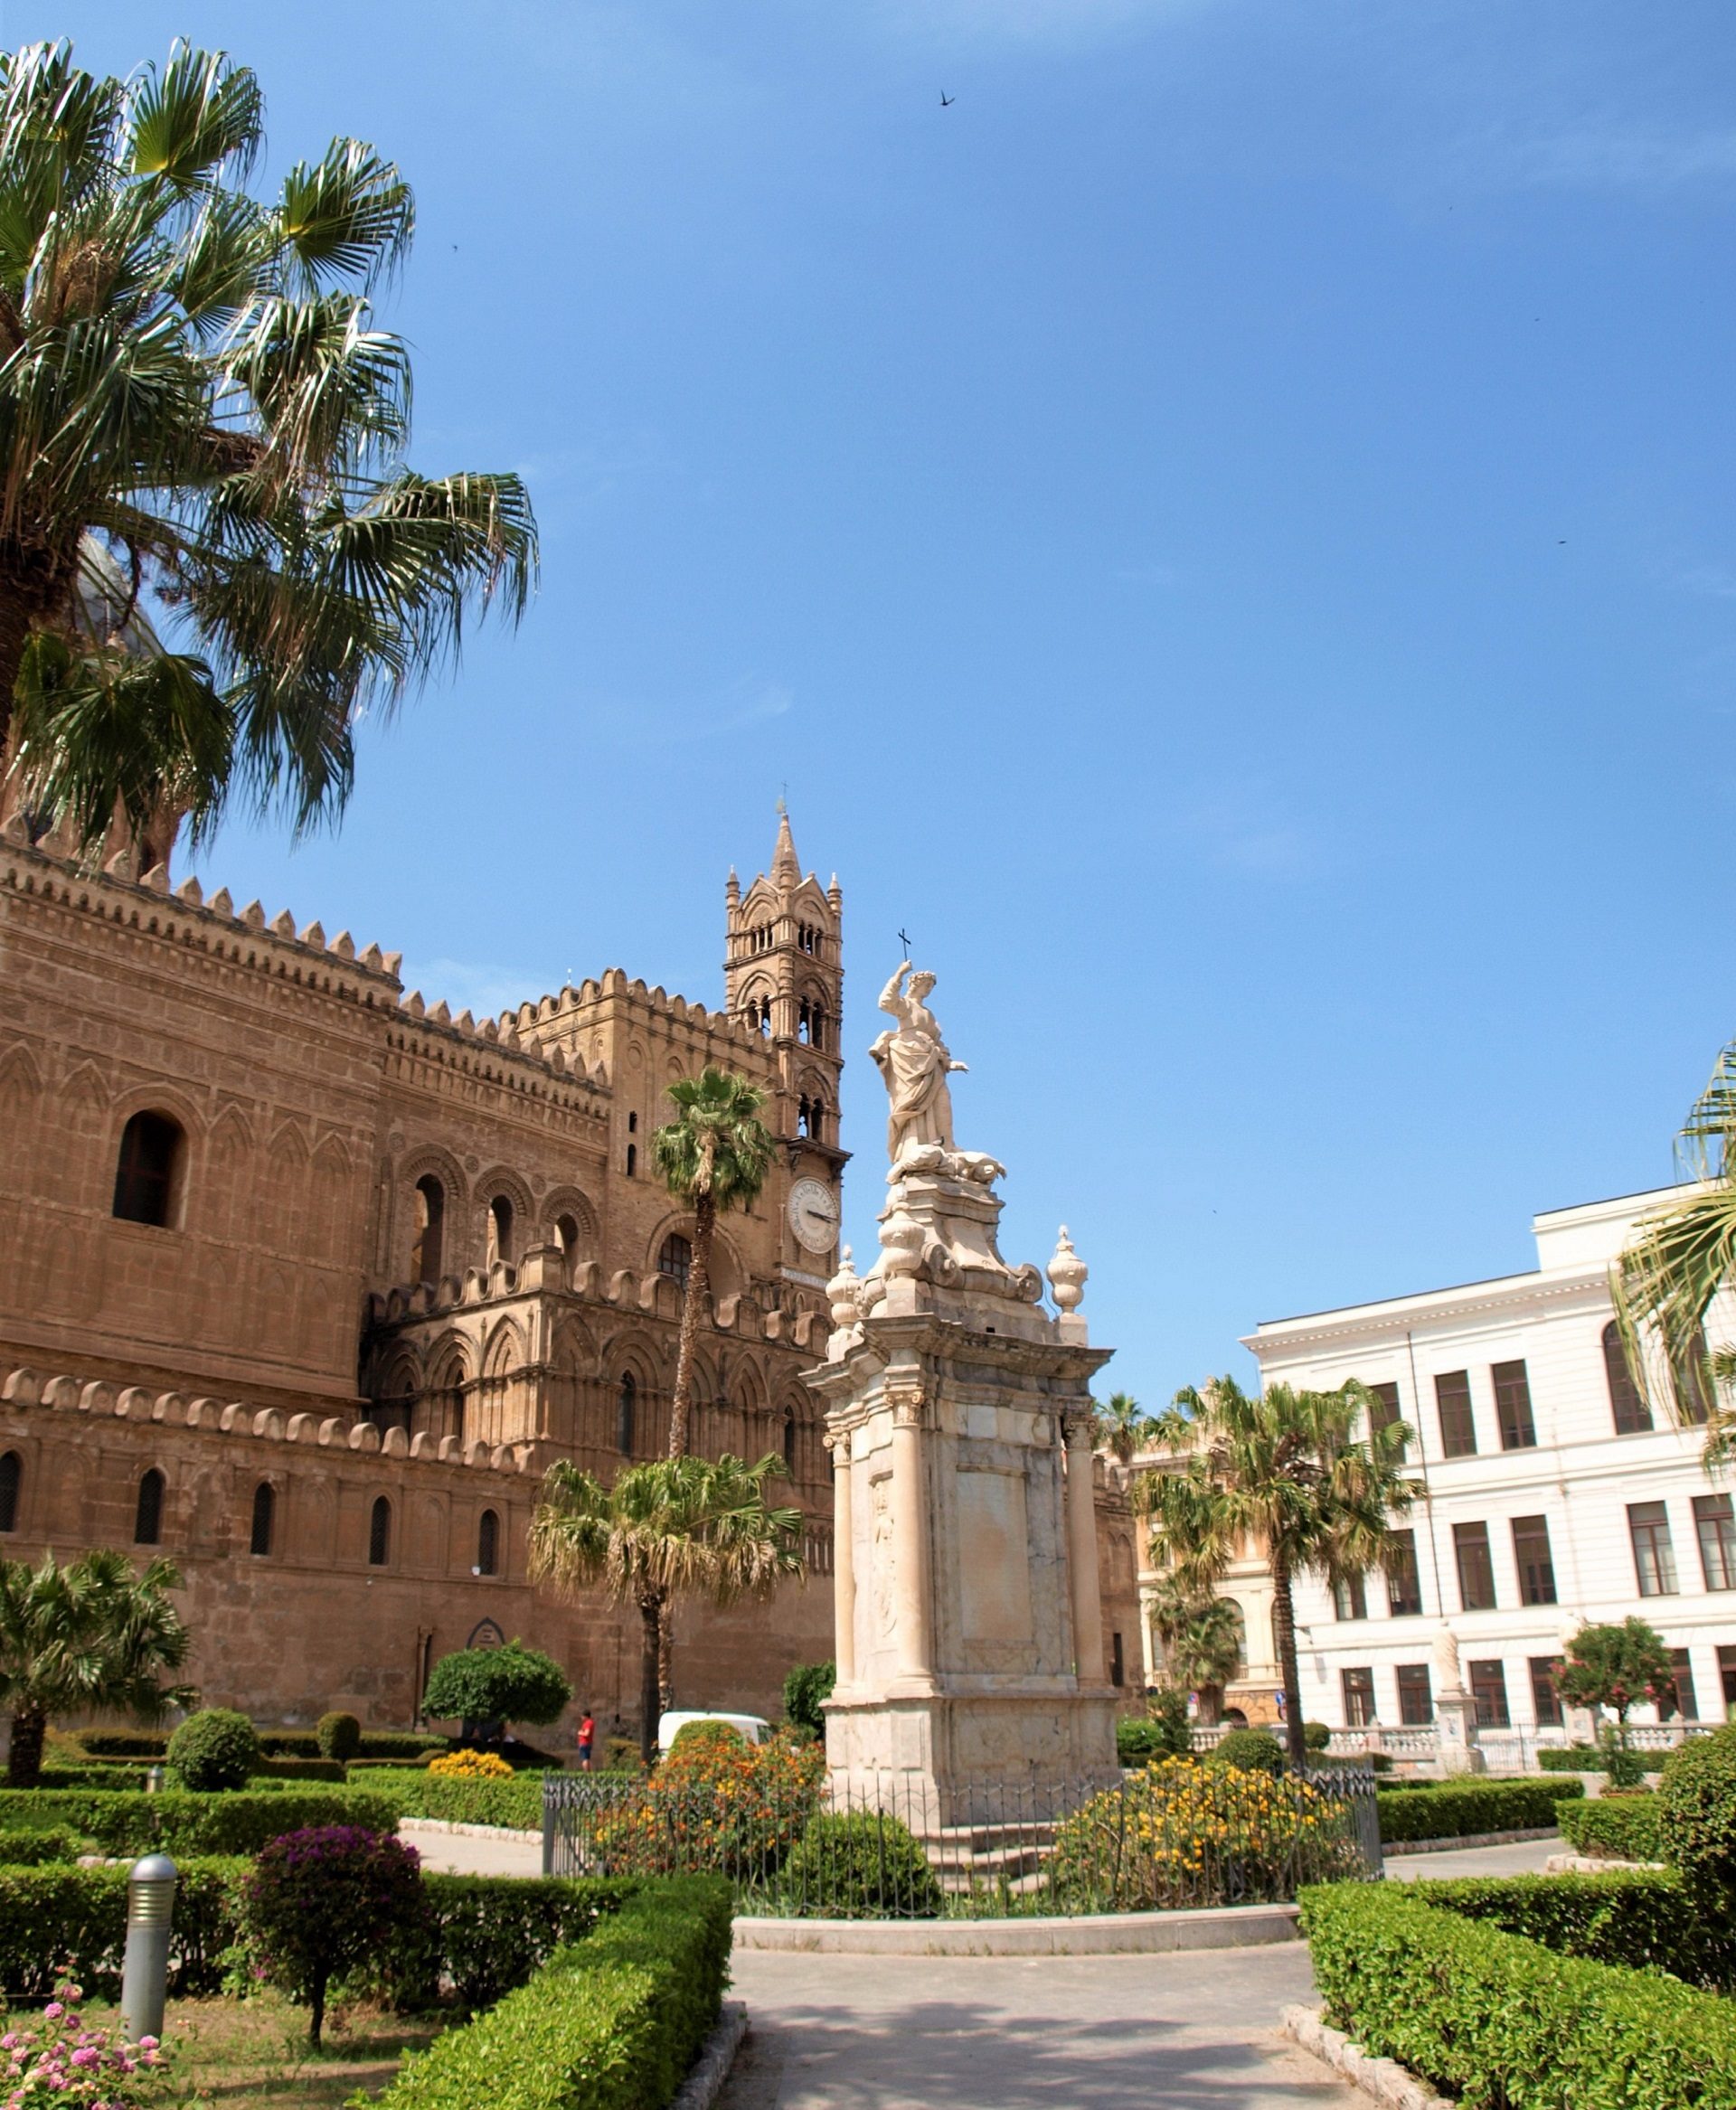 katedra w Palermo, architektura Sycylii, lista UNESCO, zabytki architektury arabsko-normańskiej